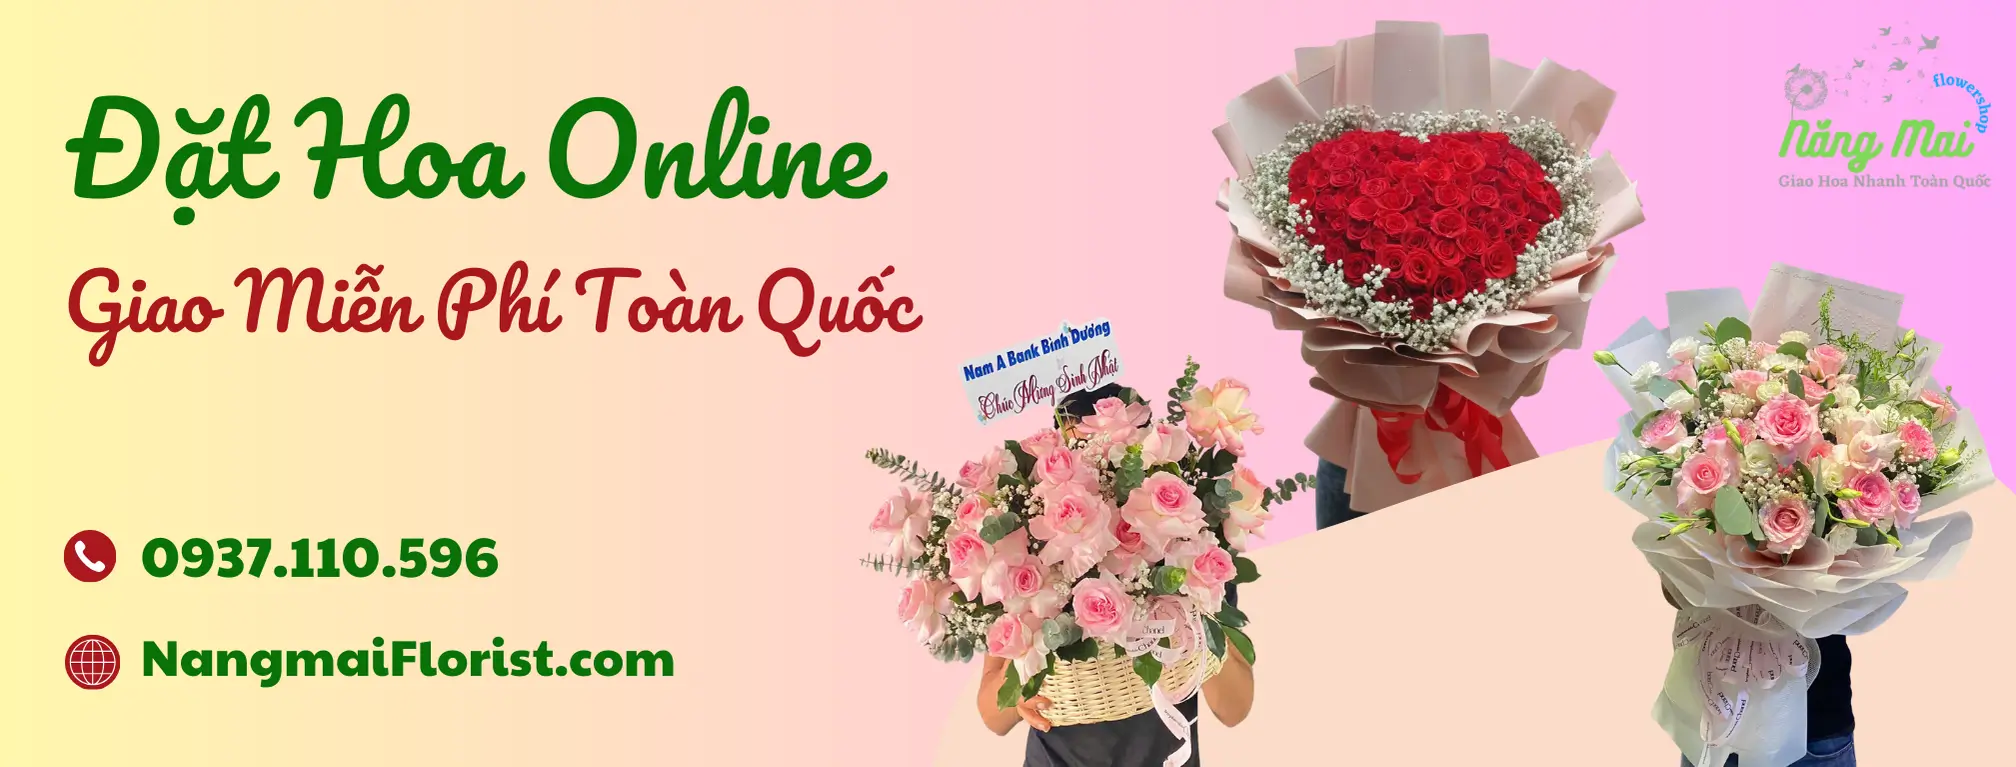 dat-hoa-online-nang-mai-florist